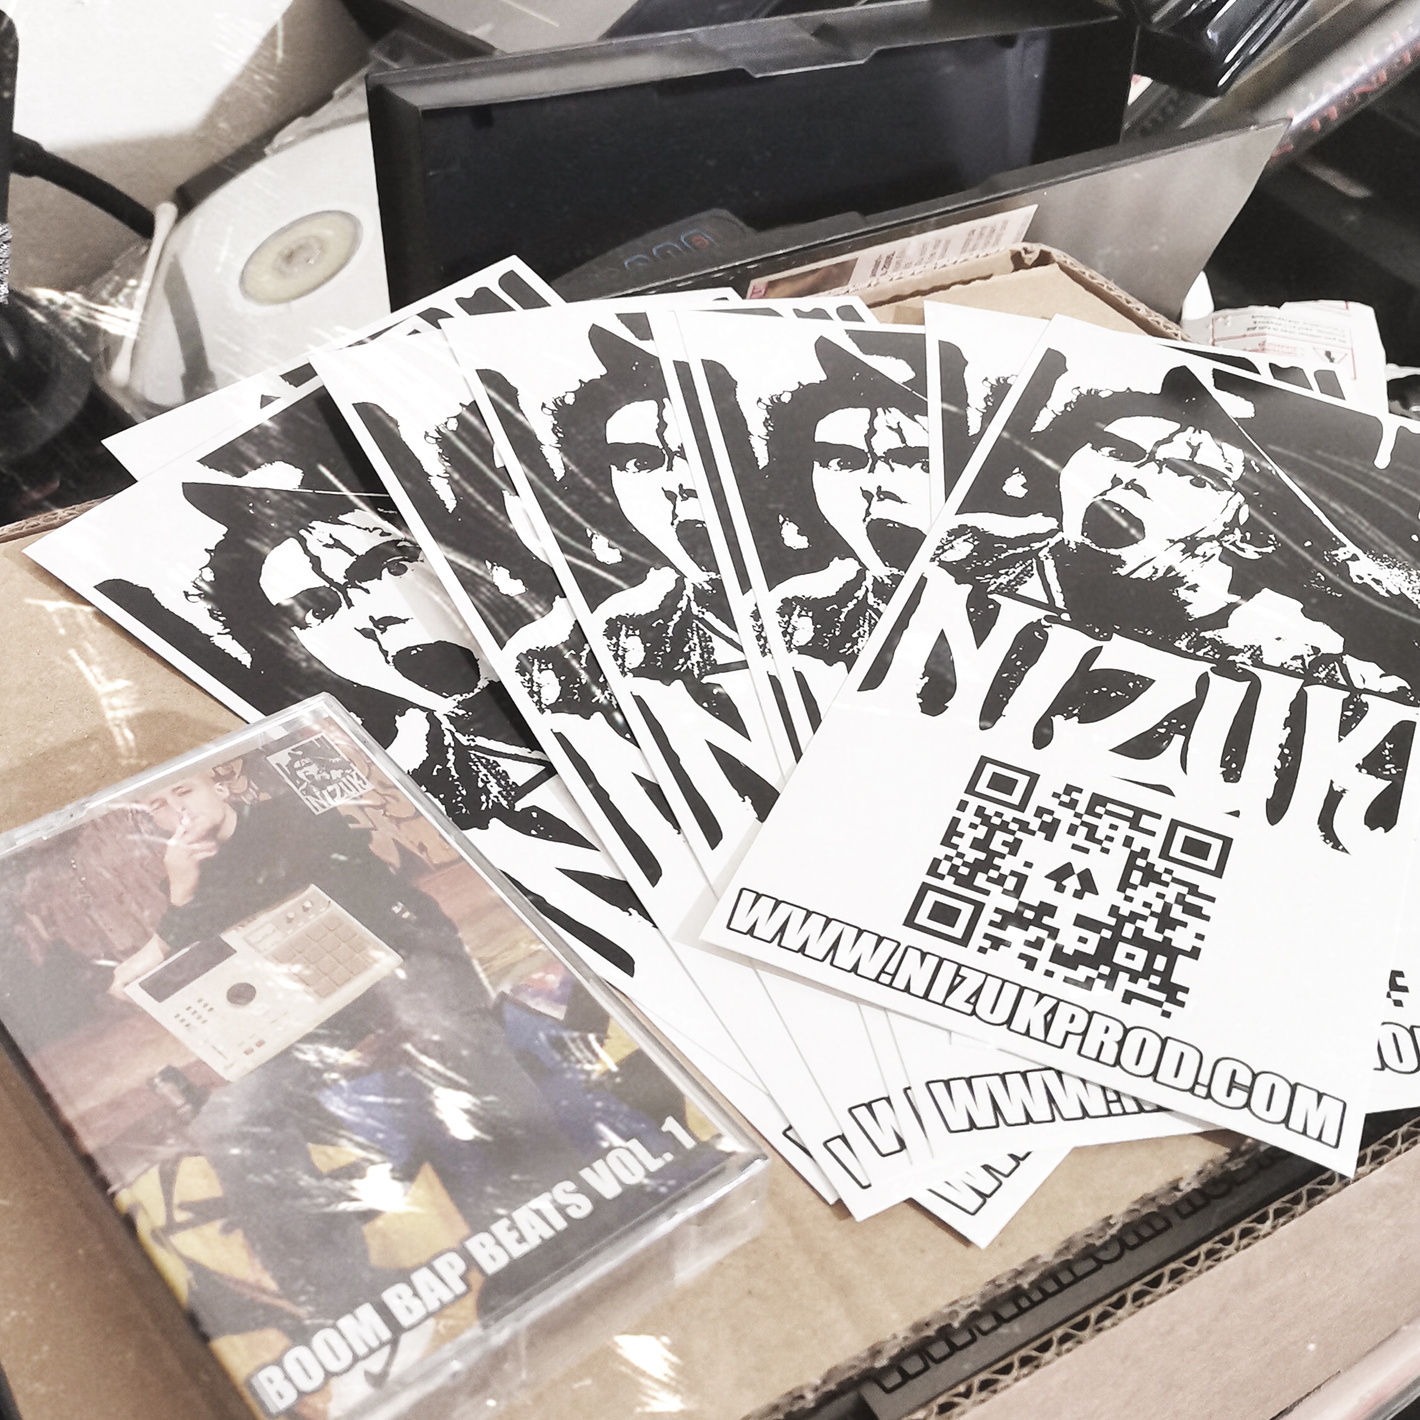 Avis d'un client sur la boutique du beatmaker Hip Hop Nizuk : "Du boom bap comme on l'aime. K7 reçu rapidement et bien emballée".